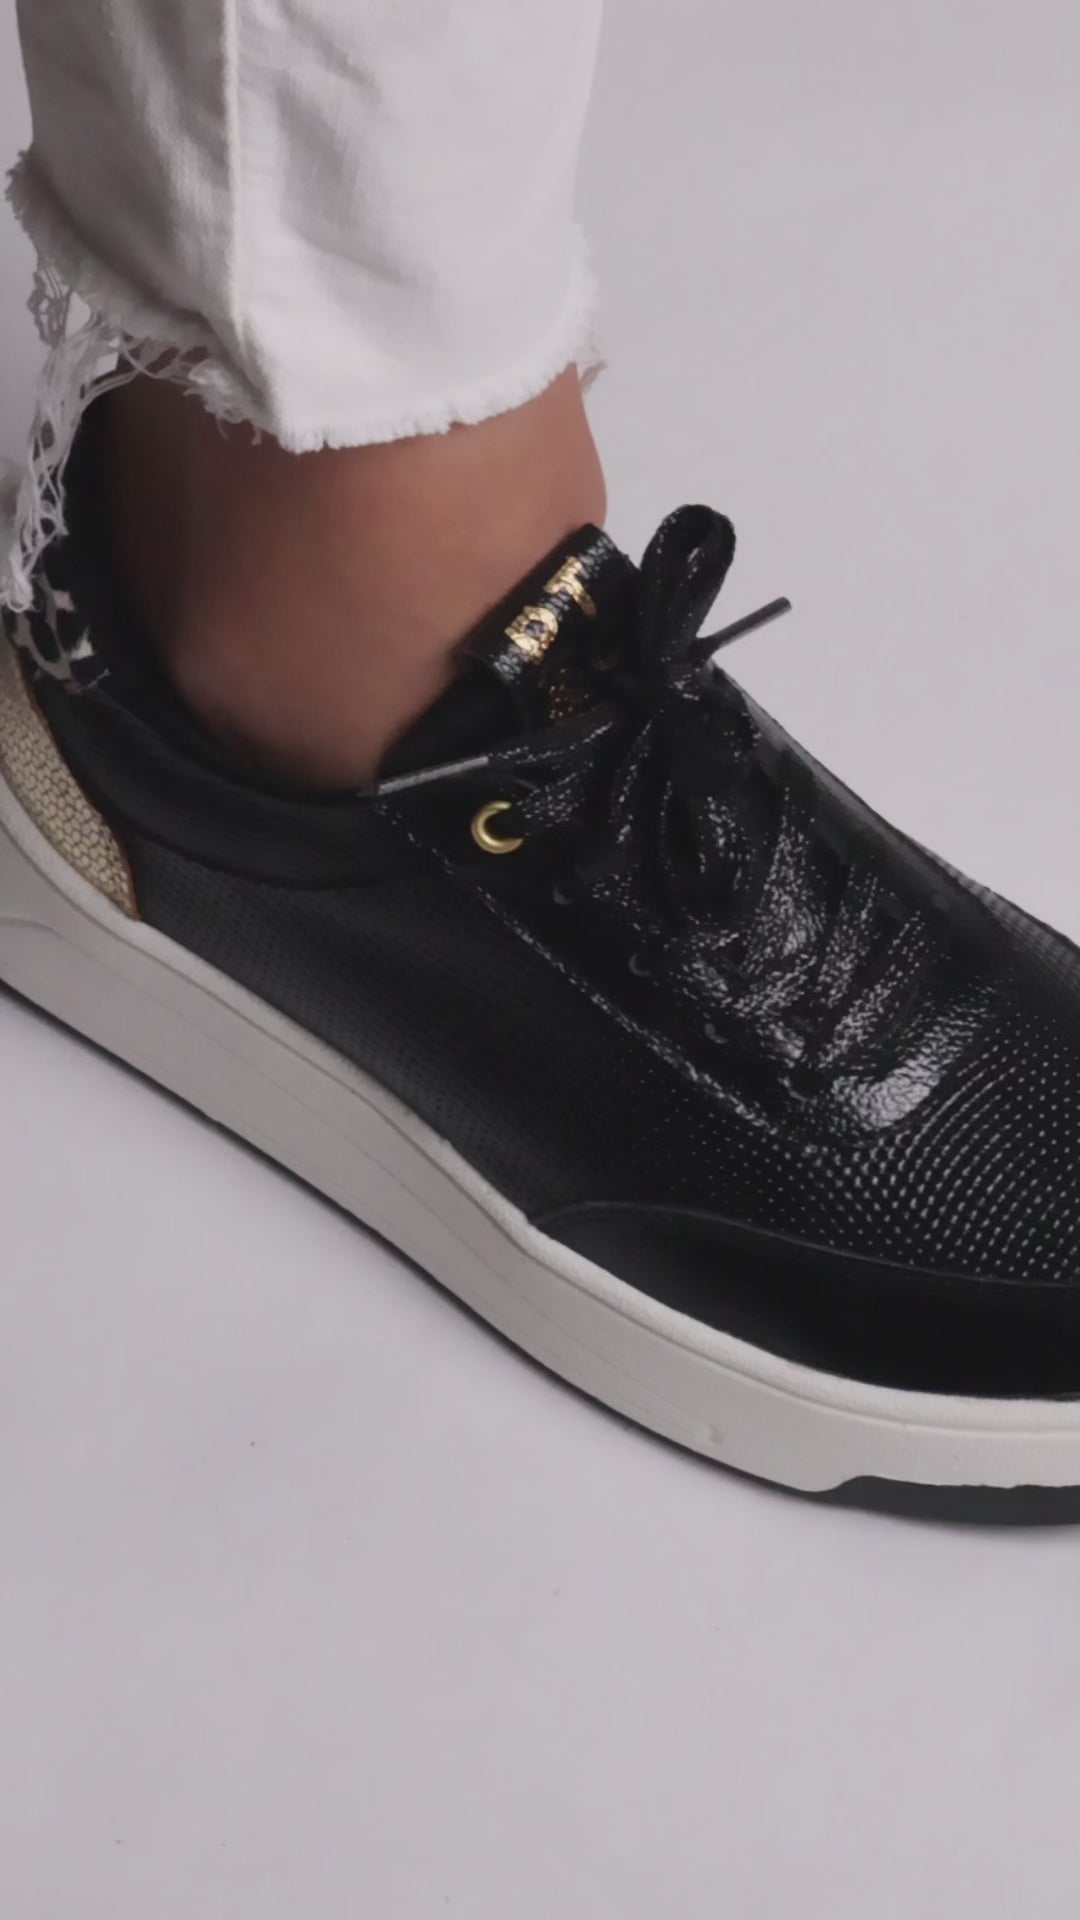 Cargar video: Zapatos negros en cuero 100% con folia dorada y cuero animal print, suela liviana y plantilla confort.